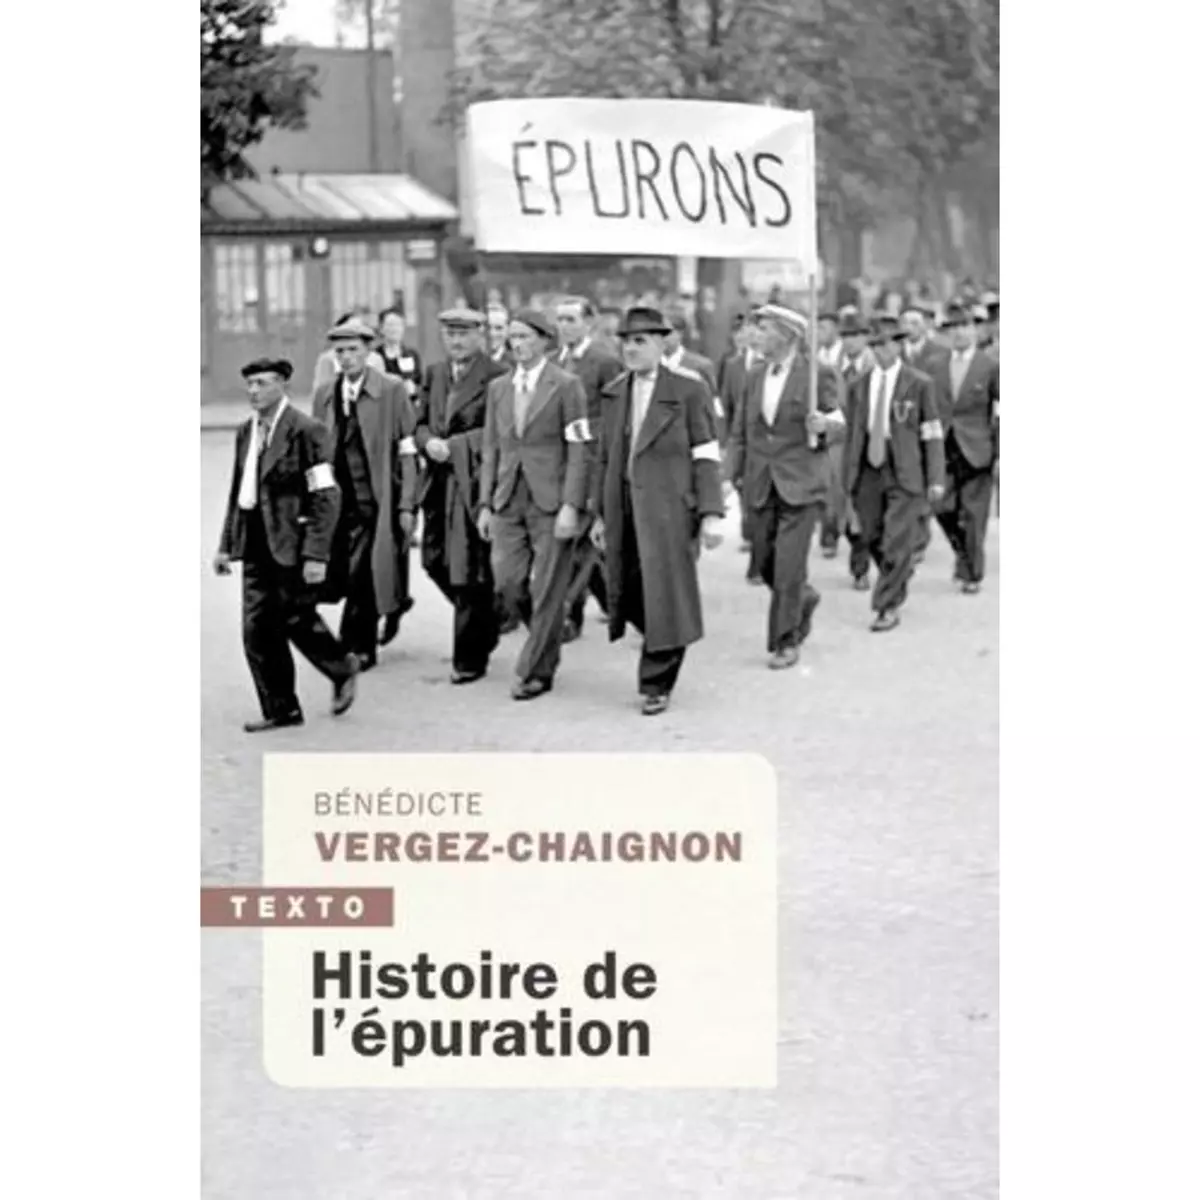  HISTOIRE DE L'EPURATION, Vergez-Chaignon Bénédicte